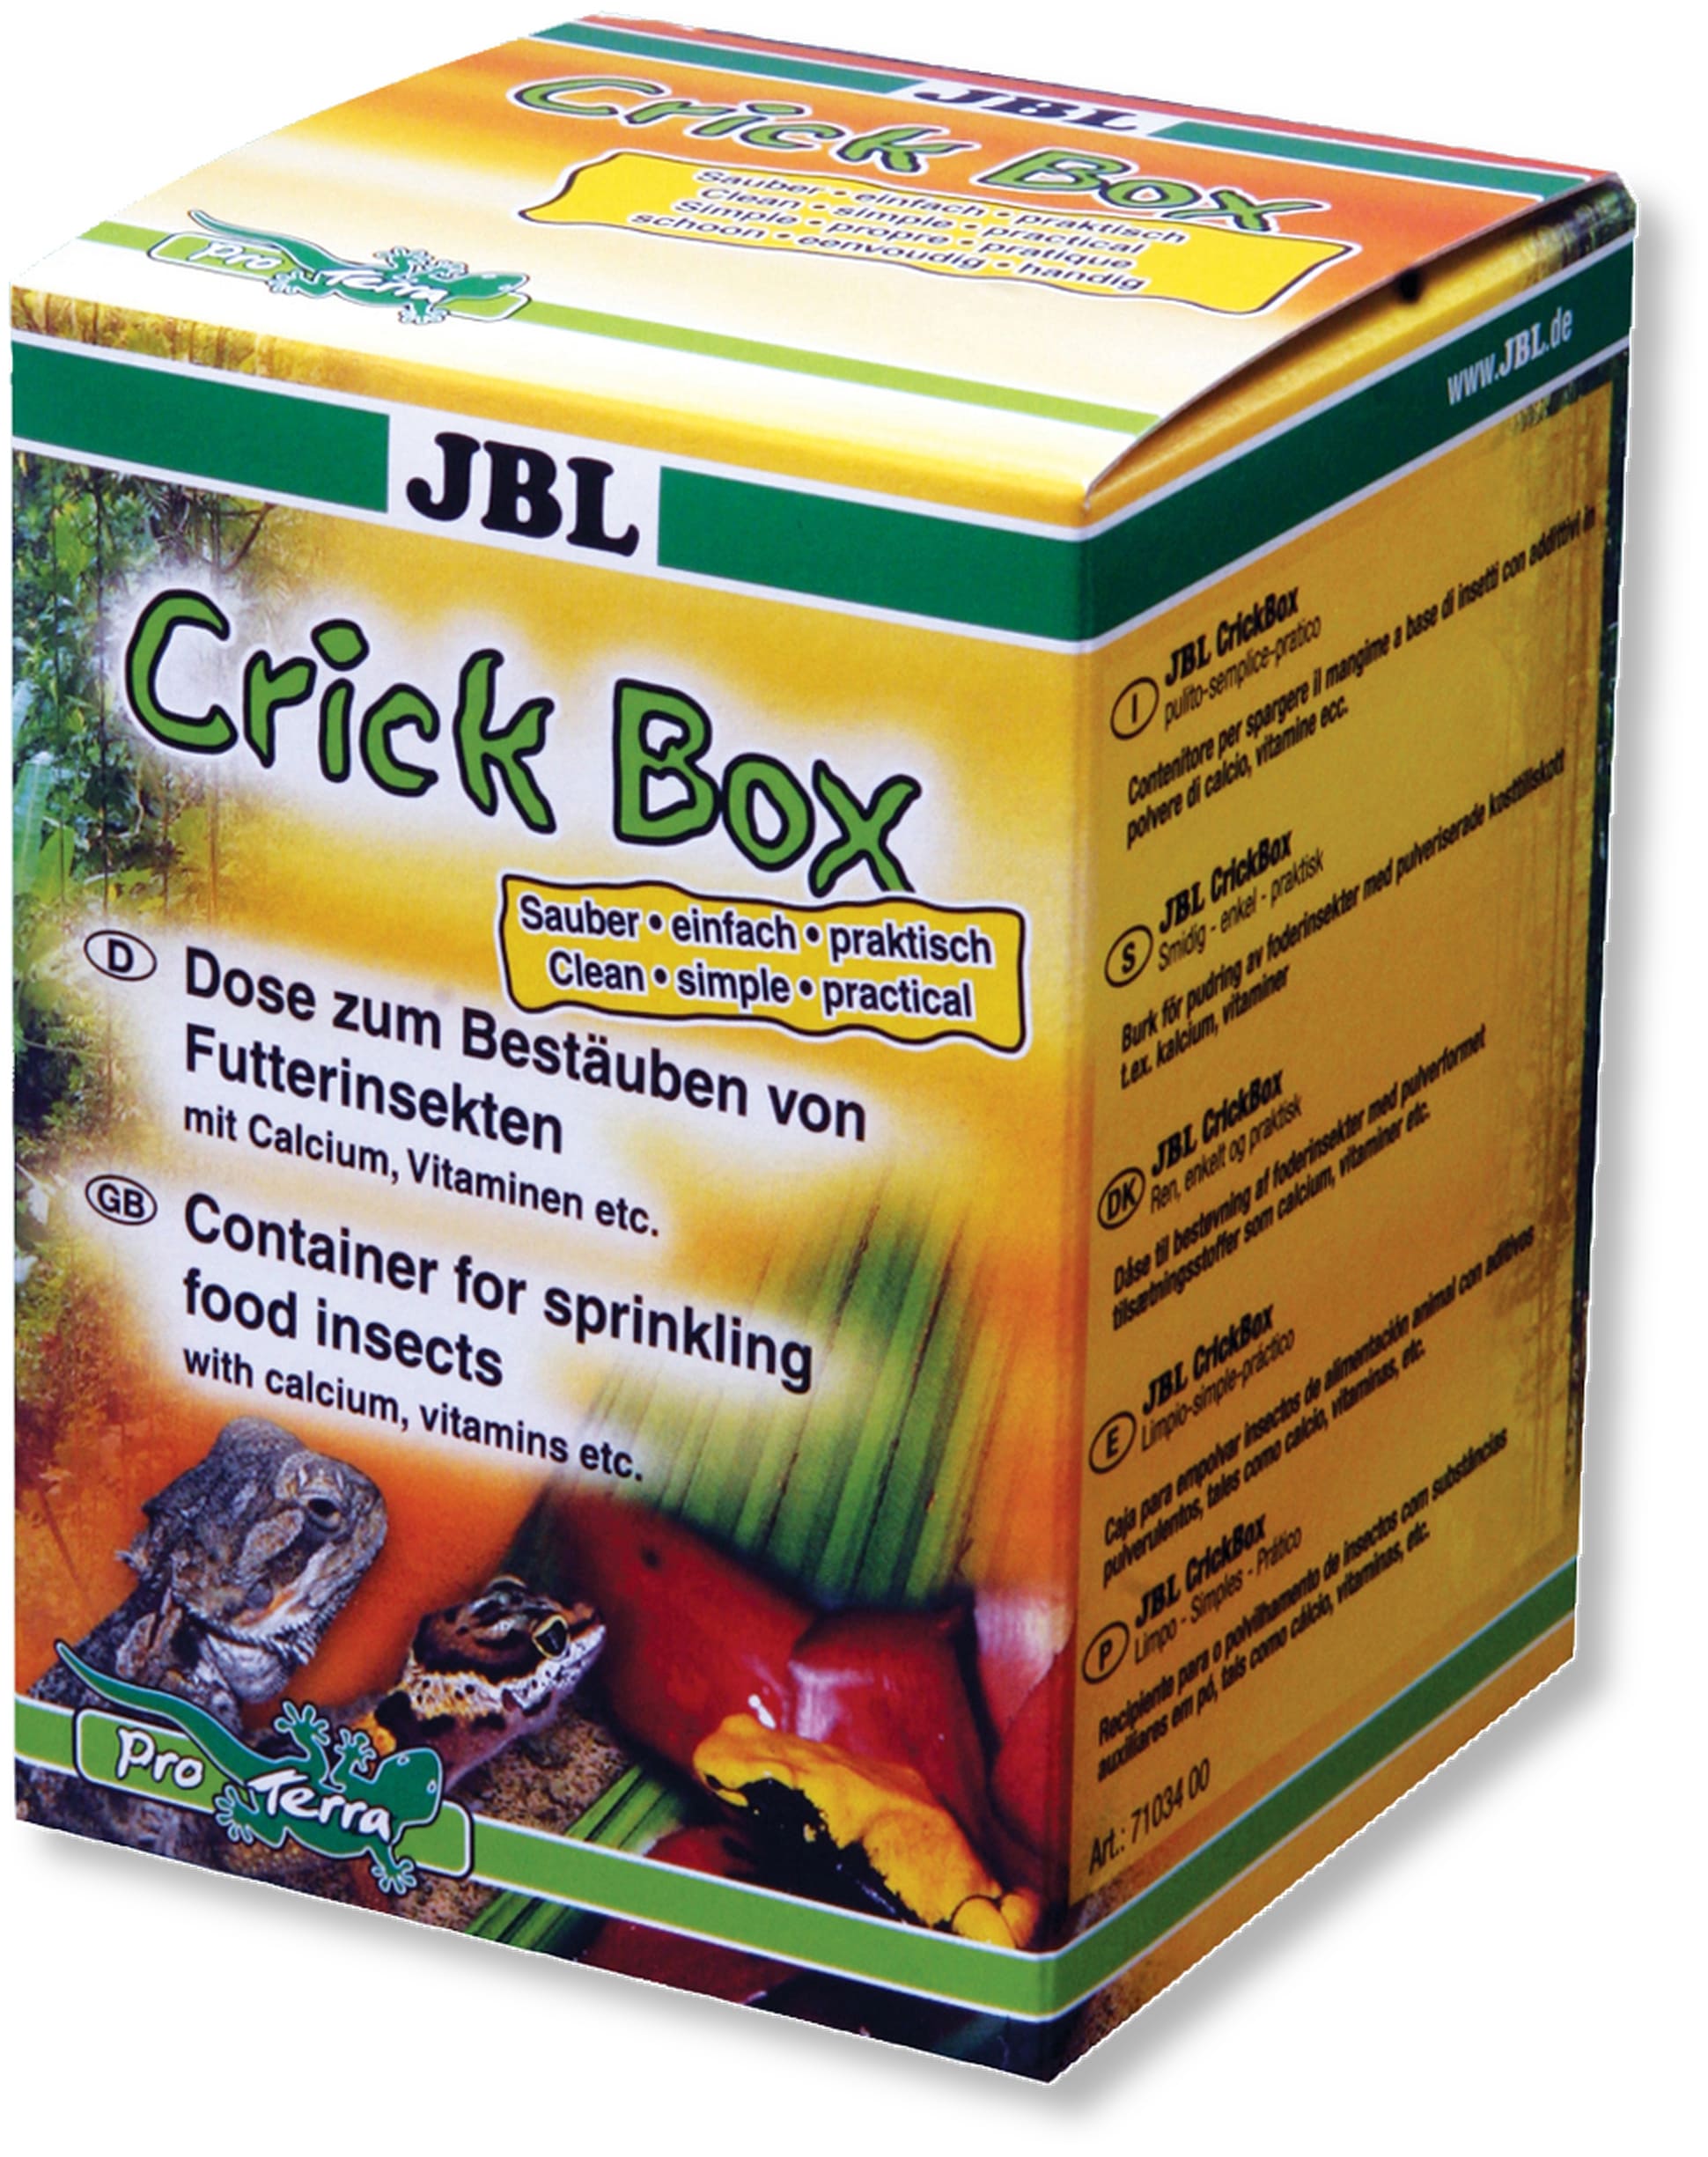 jbl-crickbox-boite-saupoudreuse-pour-enrichir-les-aliments-a-base-d-insectes